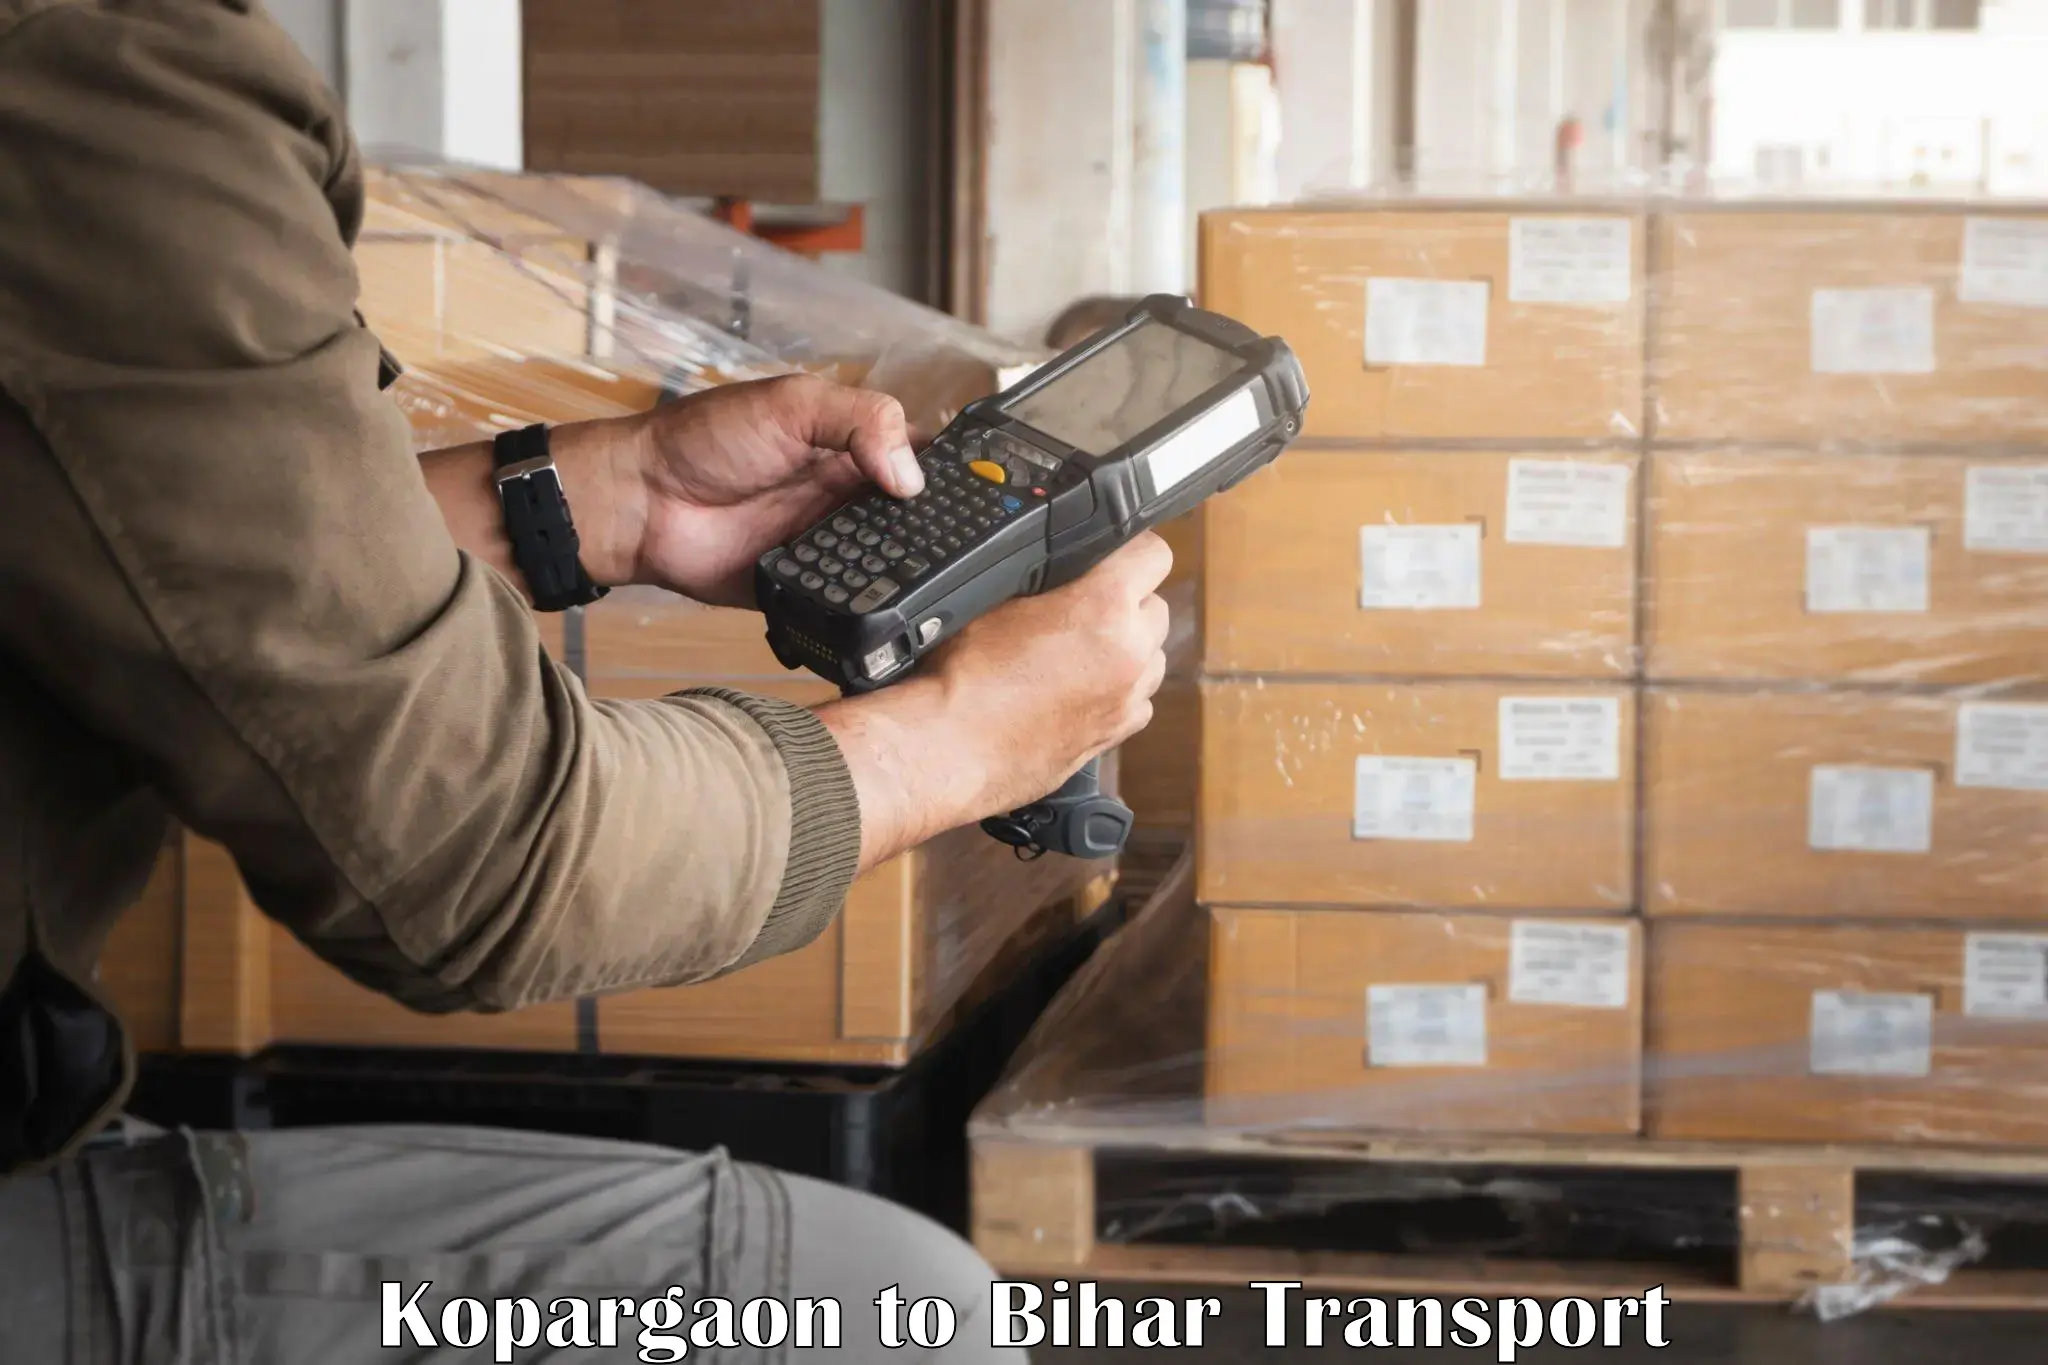 Shipping partner Kopargaon to Tekari